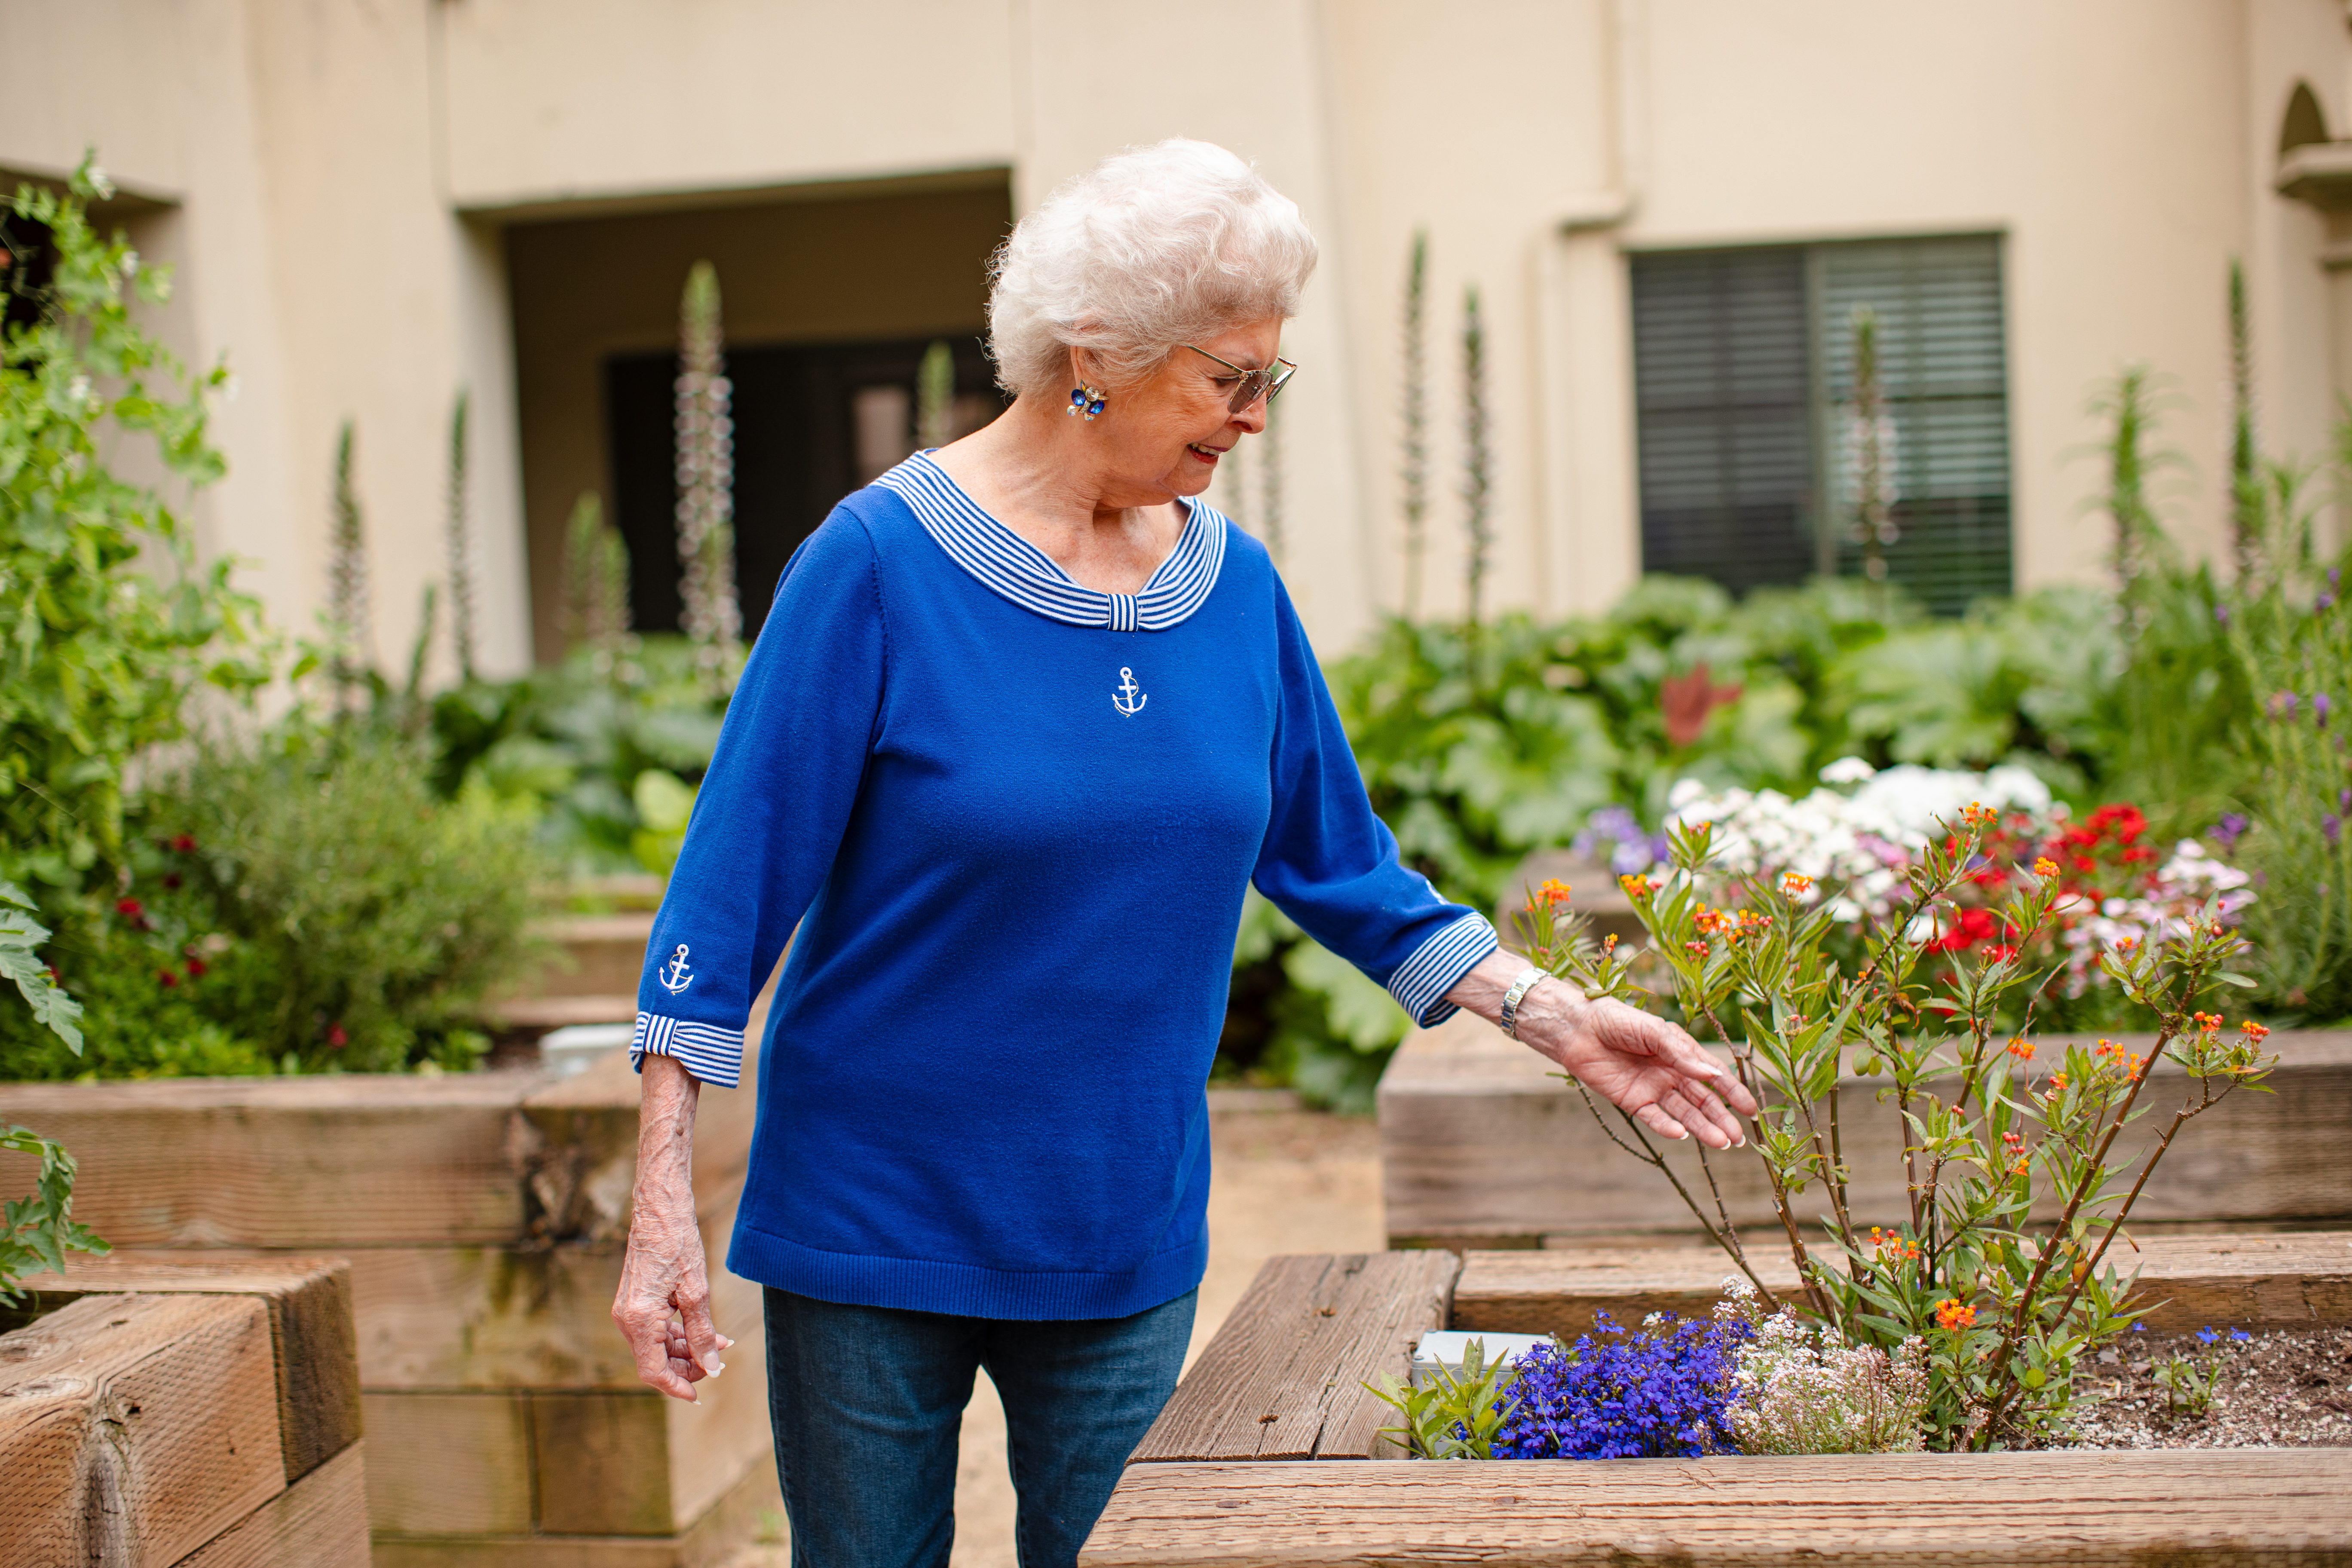 An elderly woman gracefully strolls through a serene garden, wearing a lovely blue dress.